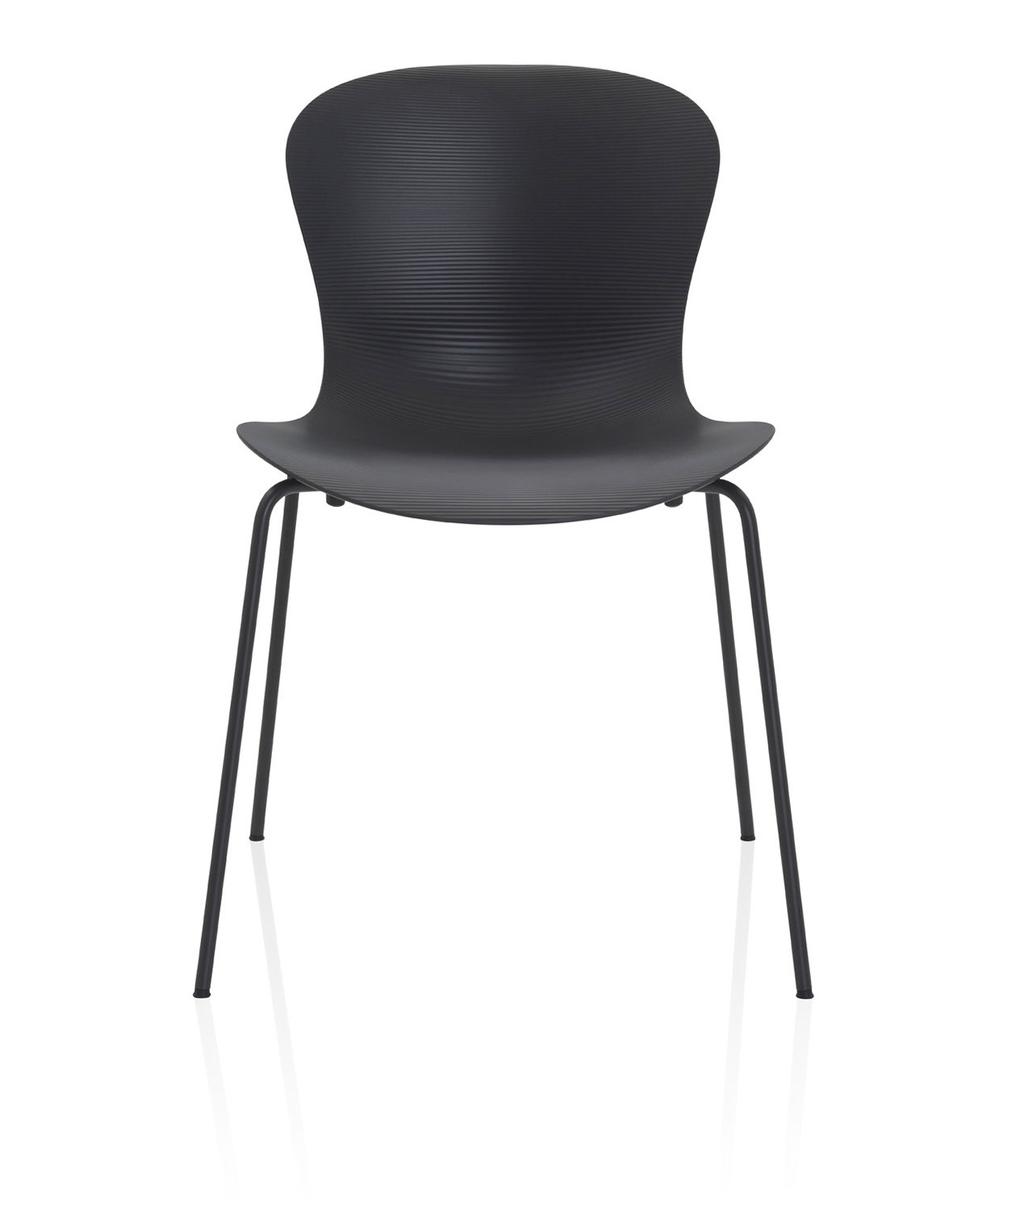 NAP Stolen NAP är designad av den danska designern Kasper Salto för Fritz Hansen.